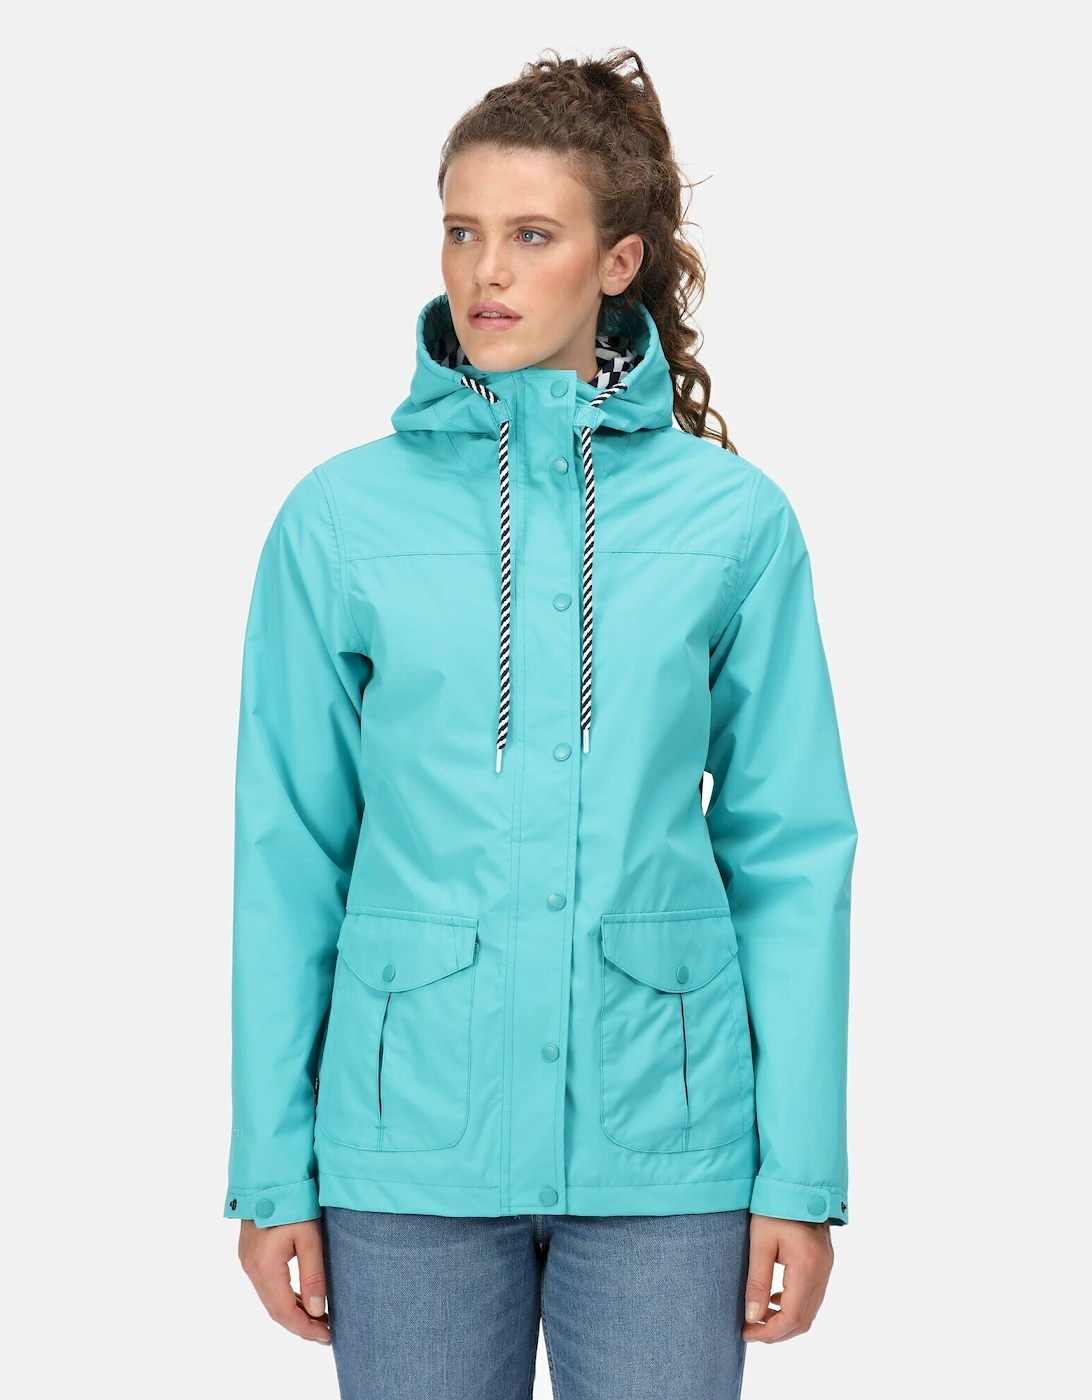 Womens/Ladies Bayarma Lightweight Waterproof Jacket